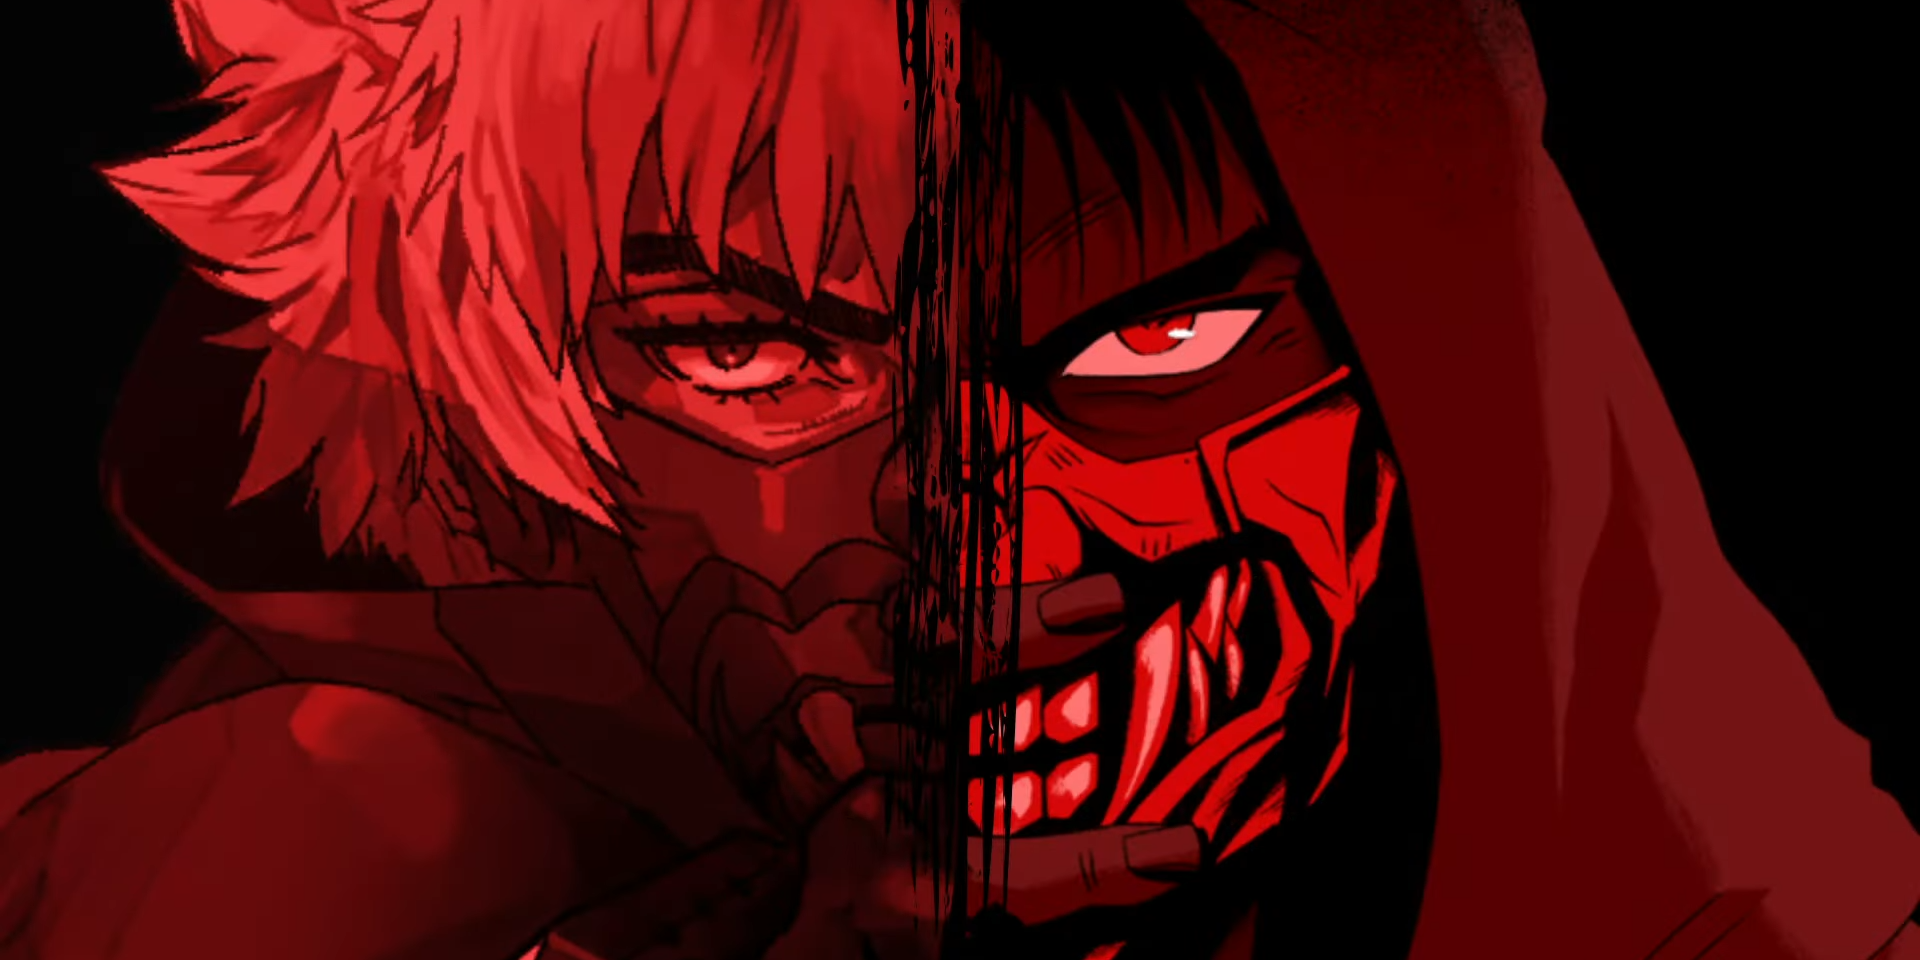 Tsukumo from Ninja Kamui: Shinobi Origins and Higan from Ninja Kamui form a split image with a red filter